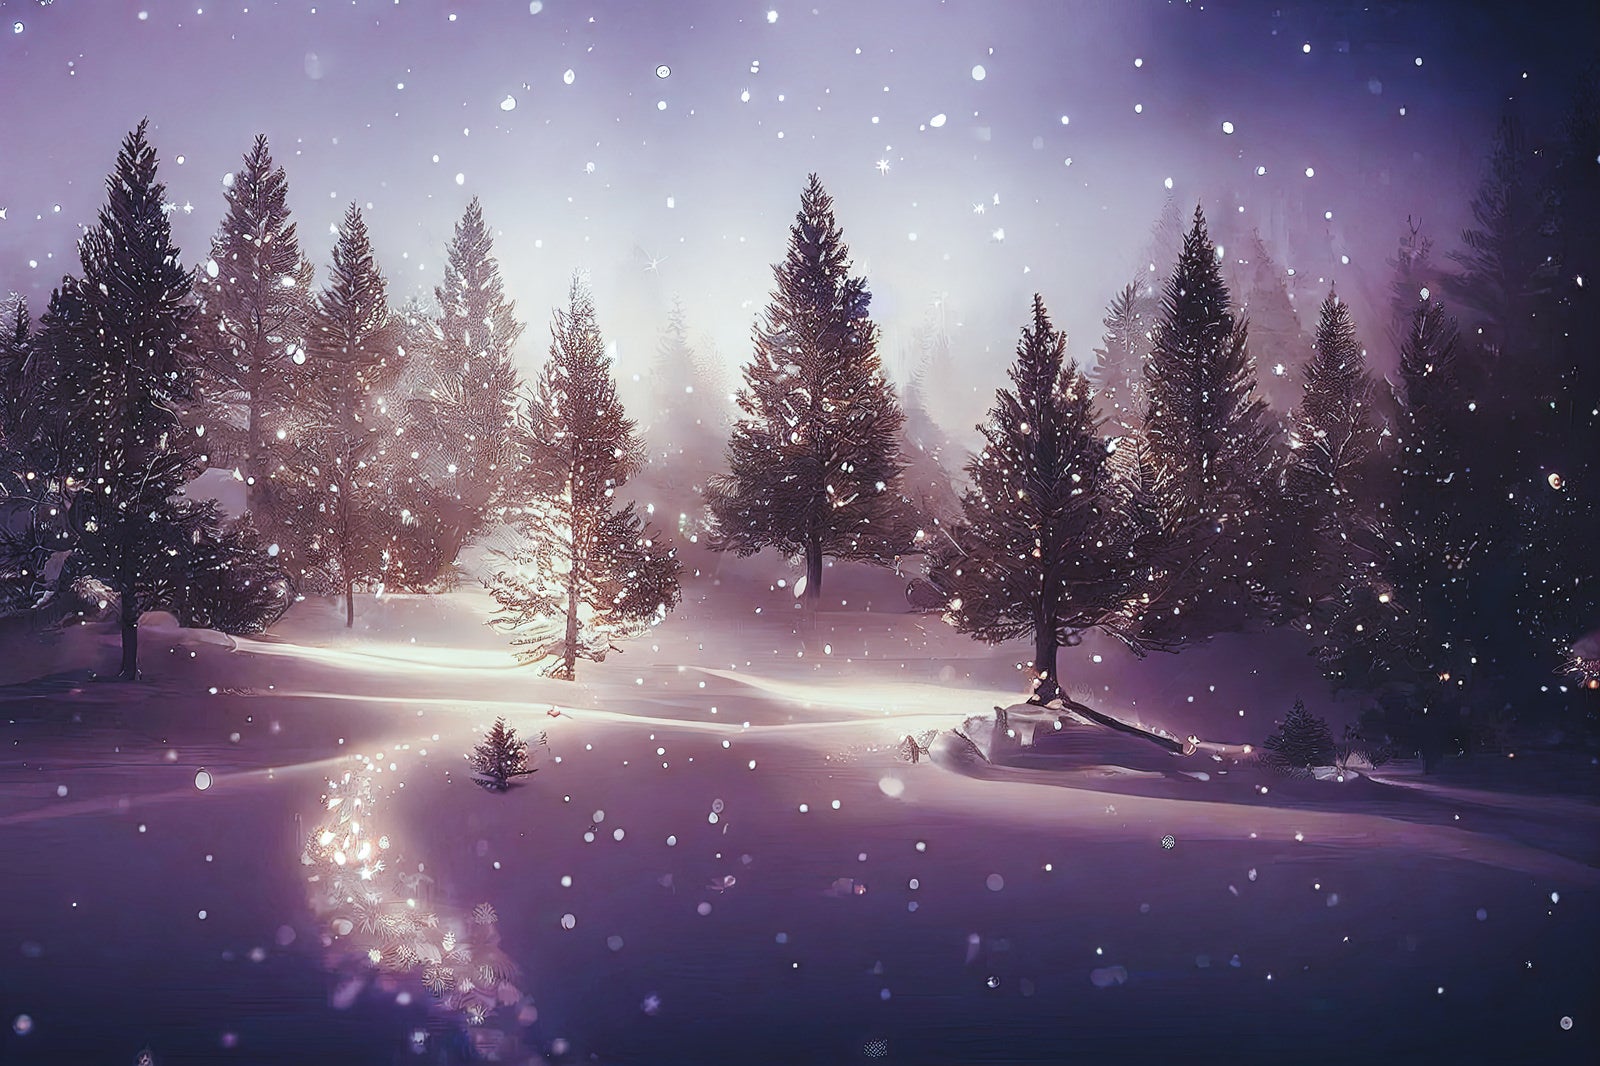 「モミノキに舞い散る雪」の写真